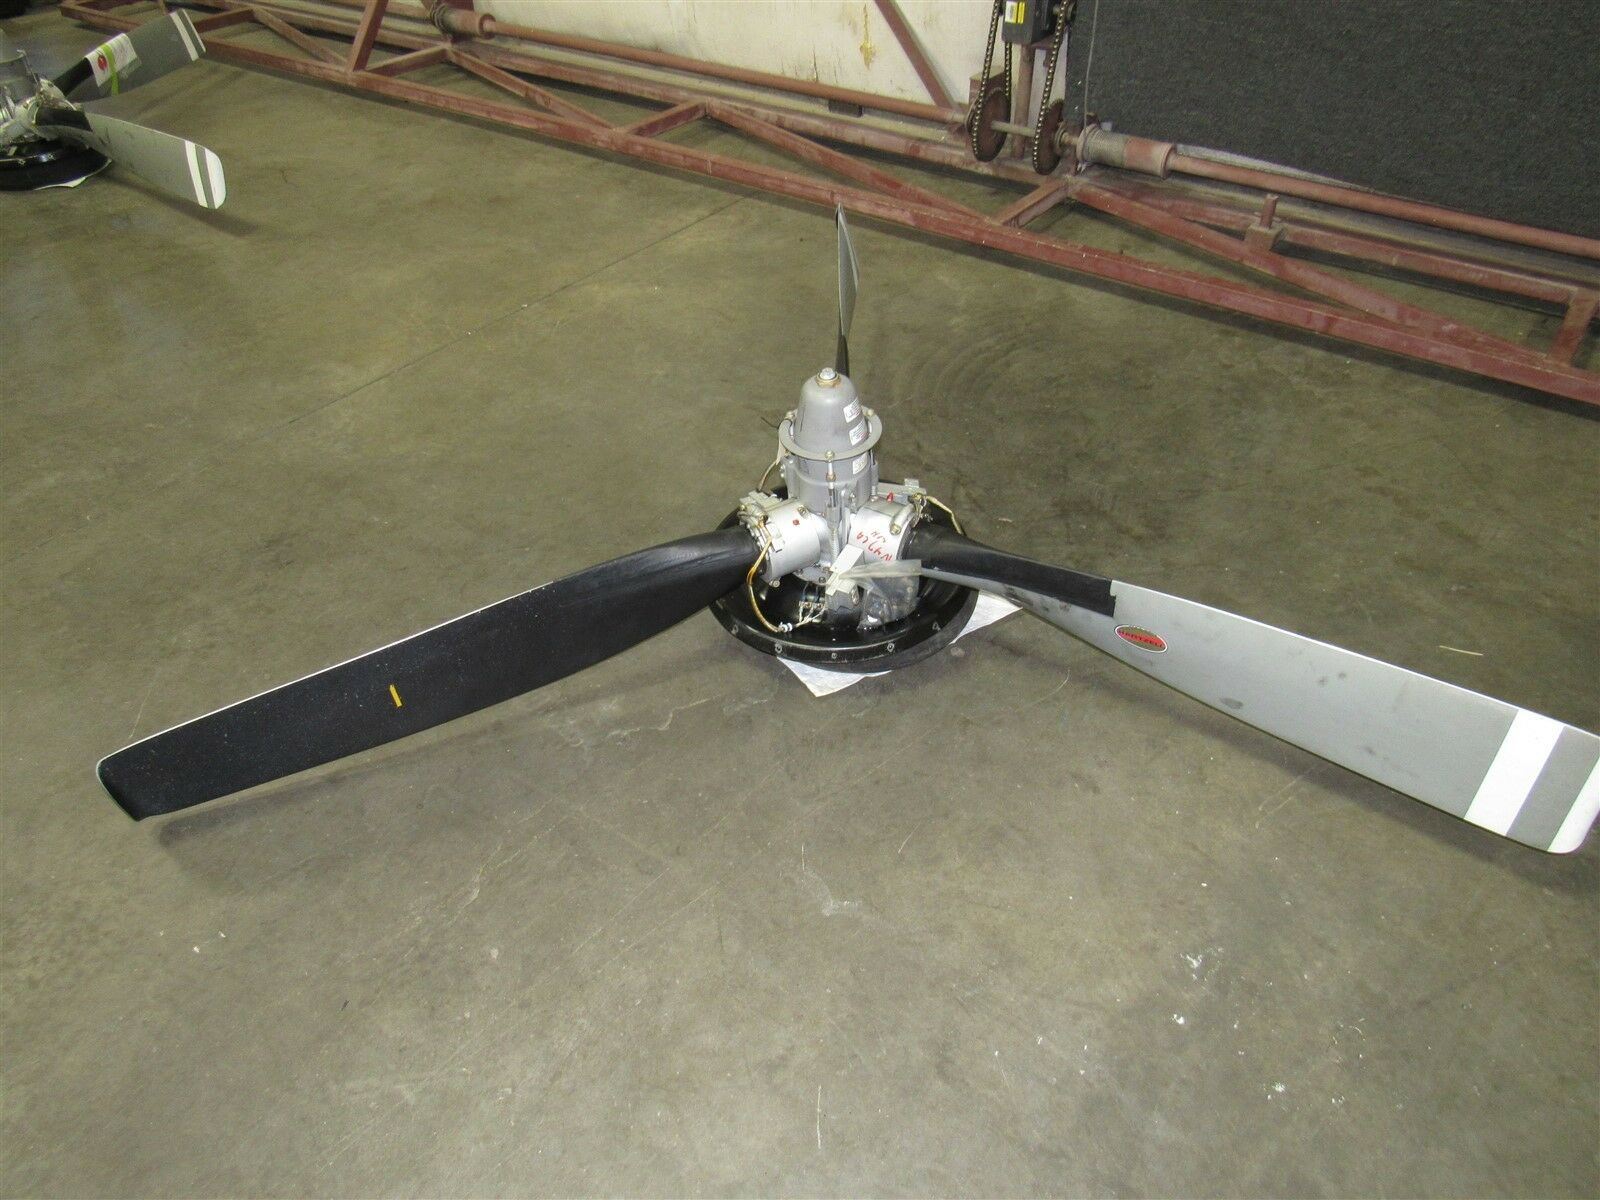 HC-E4N-3Q Hartzell 4 Blade Propeller Hub Assembly (NO LOGS) (CORE